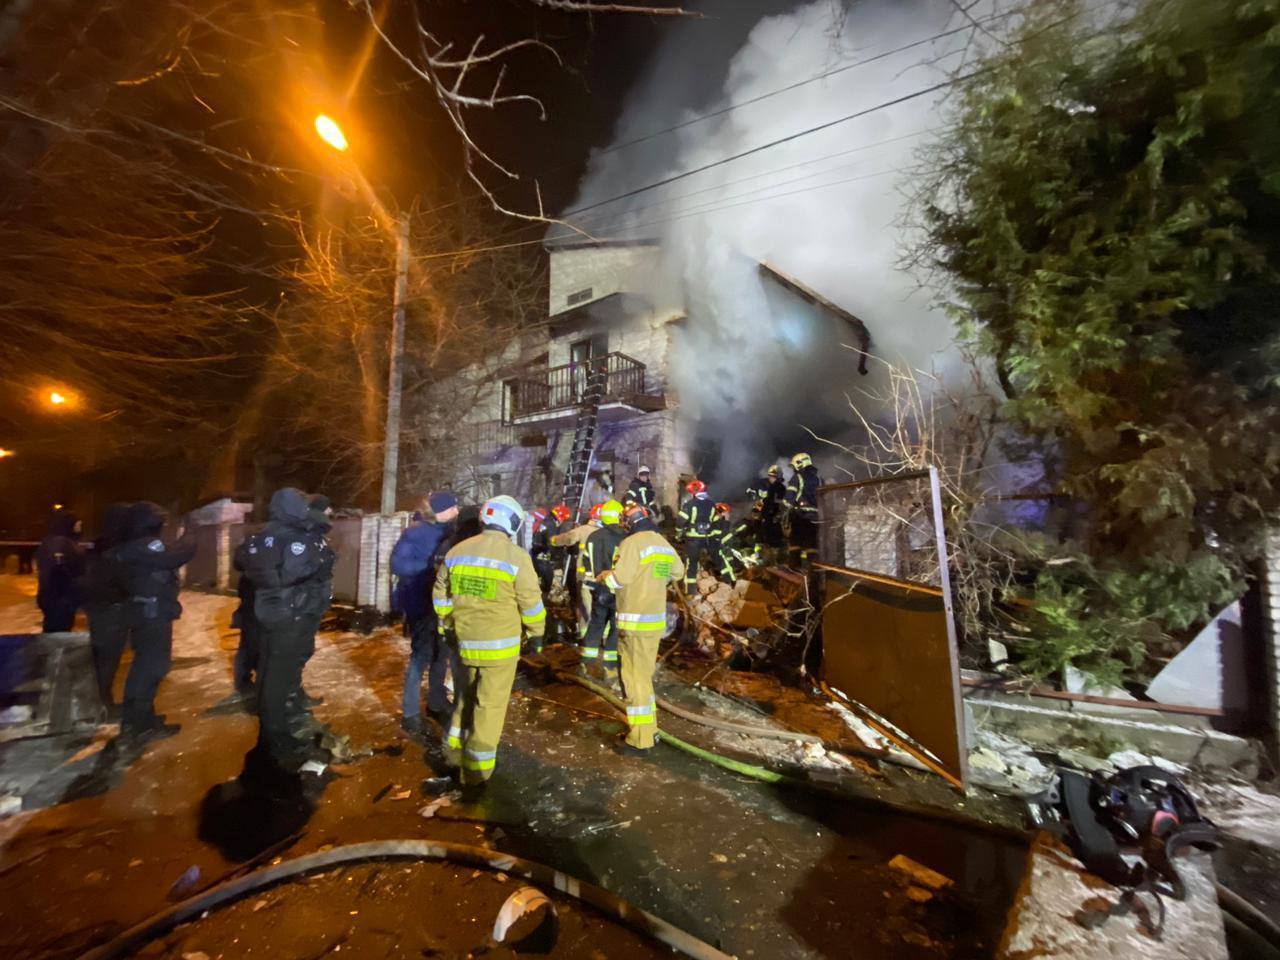 Во Львове произошел взрыв в частном доме: под завалами находились люди, есть погибшие. Фото и видео